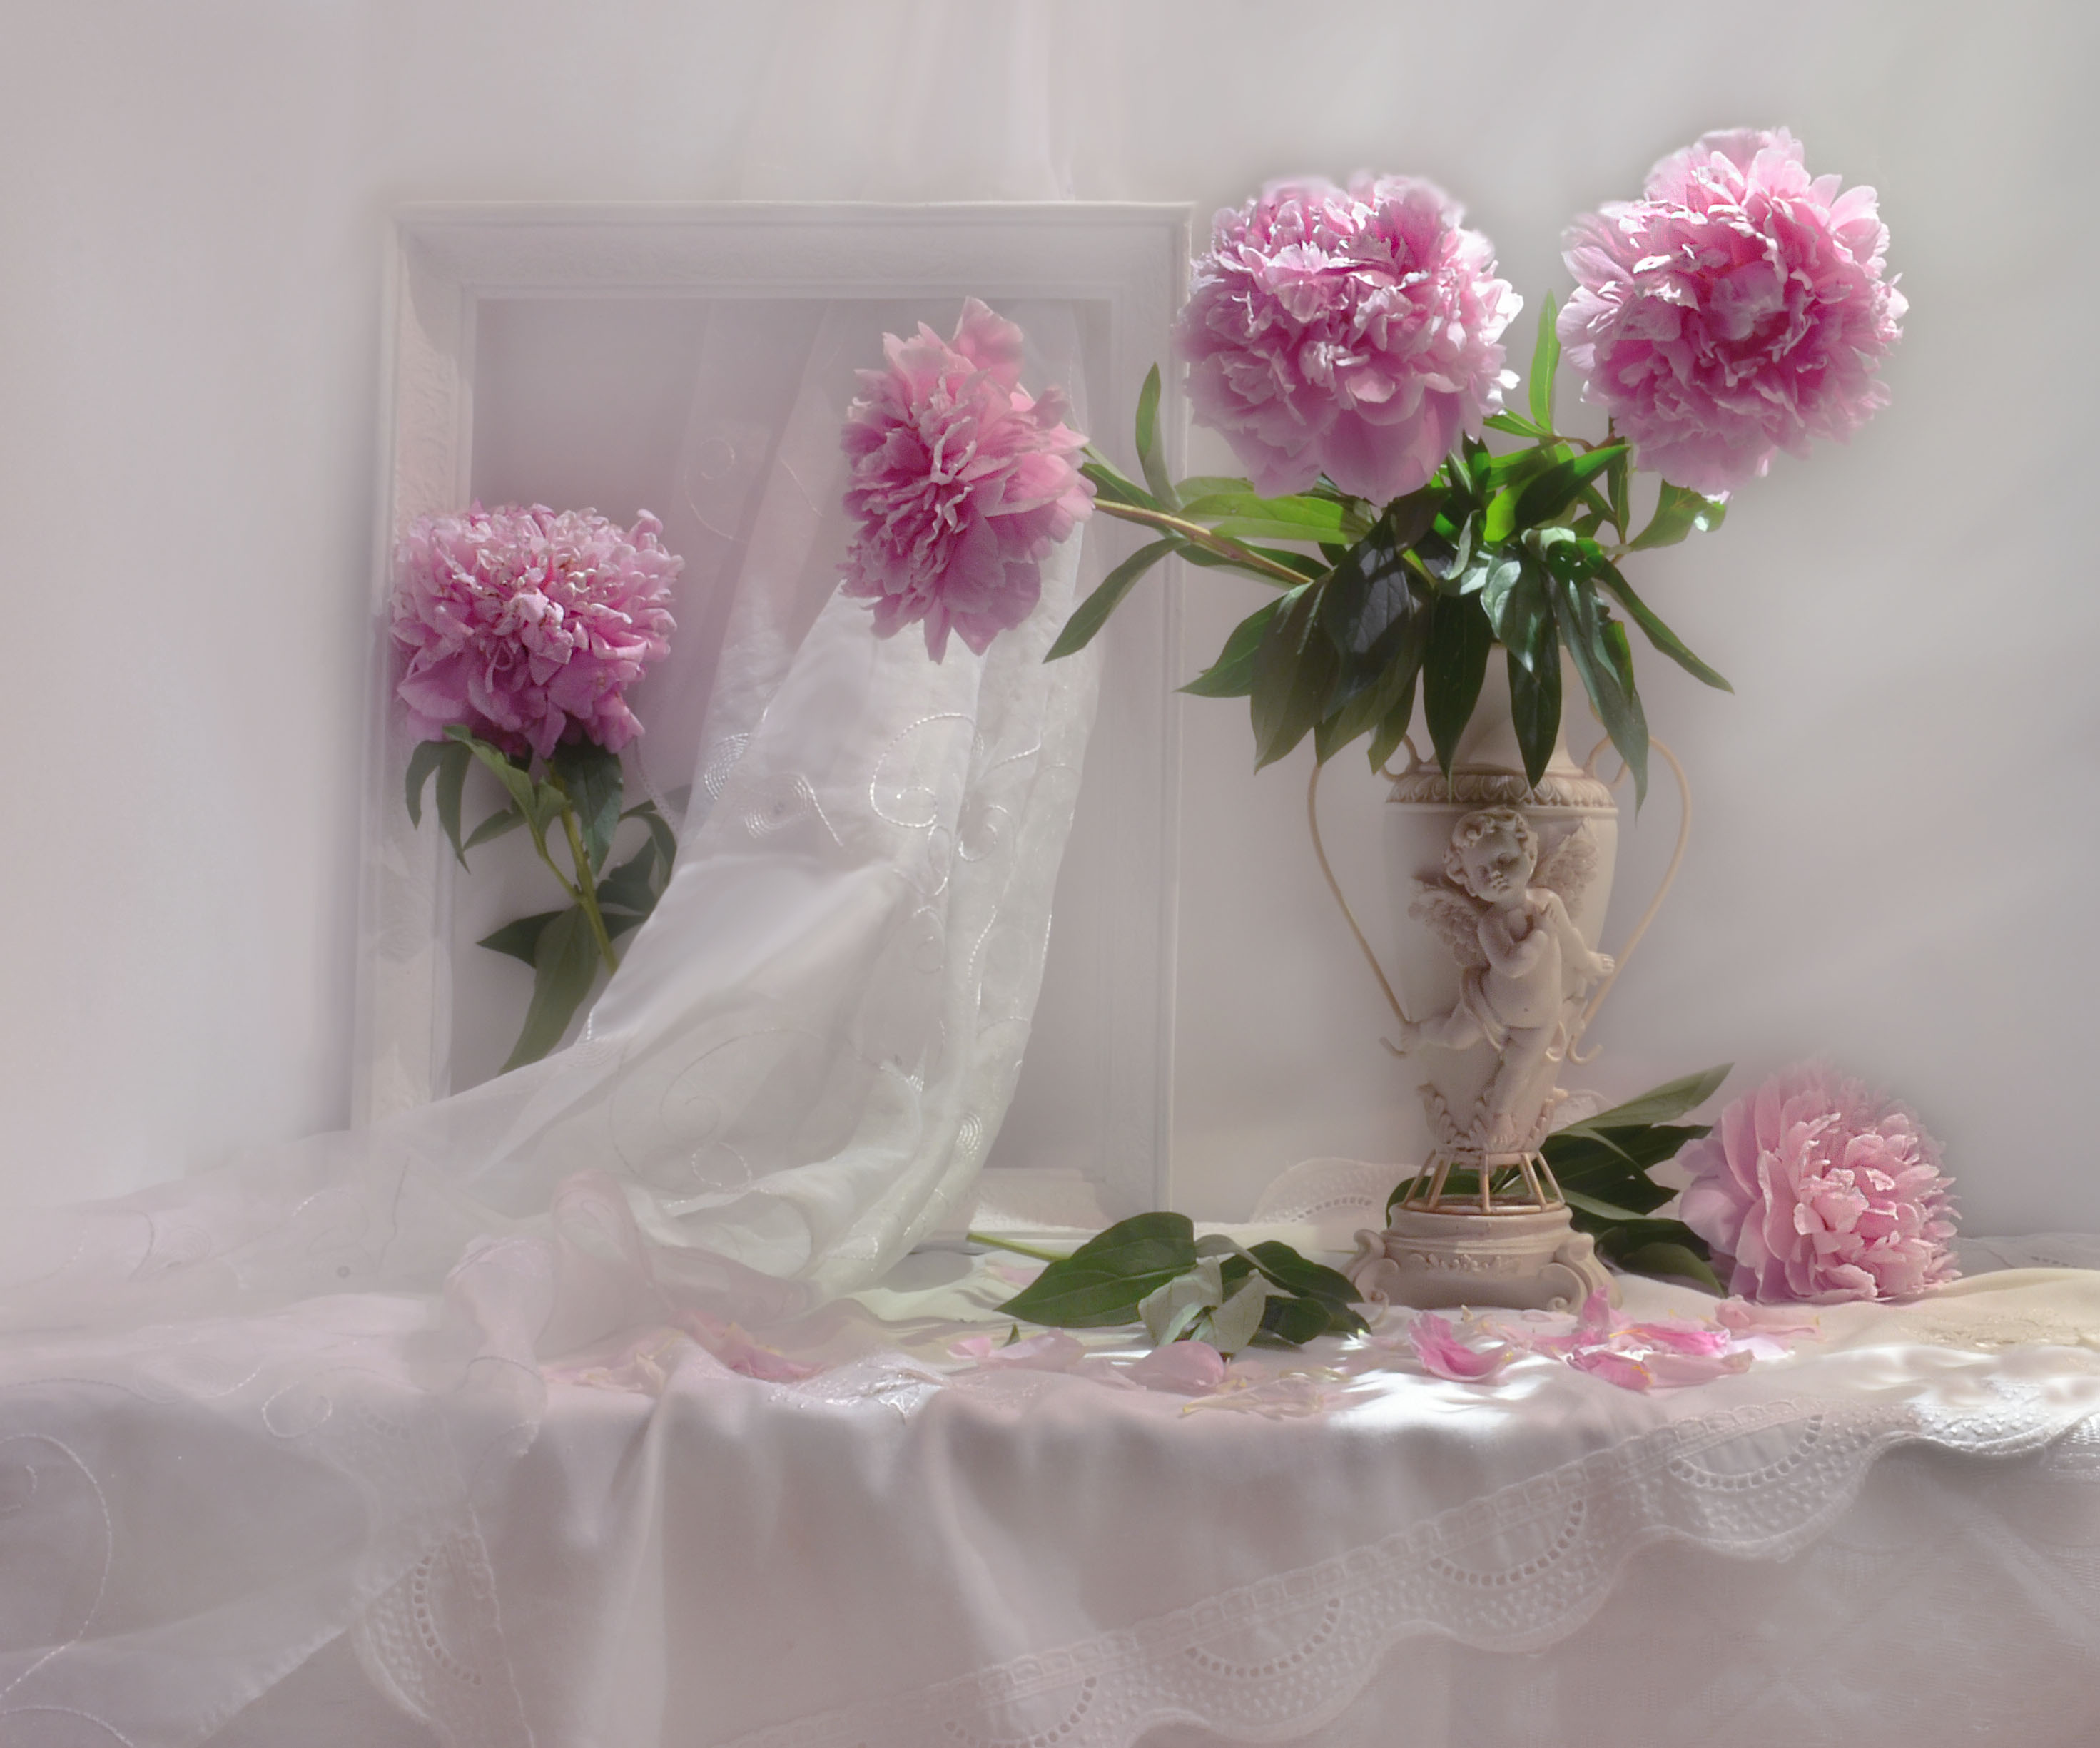 桌面上的壁纸照片 花束 鲜花